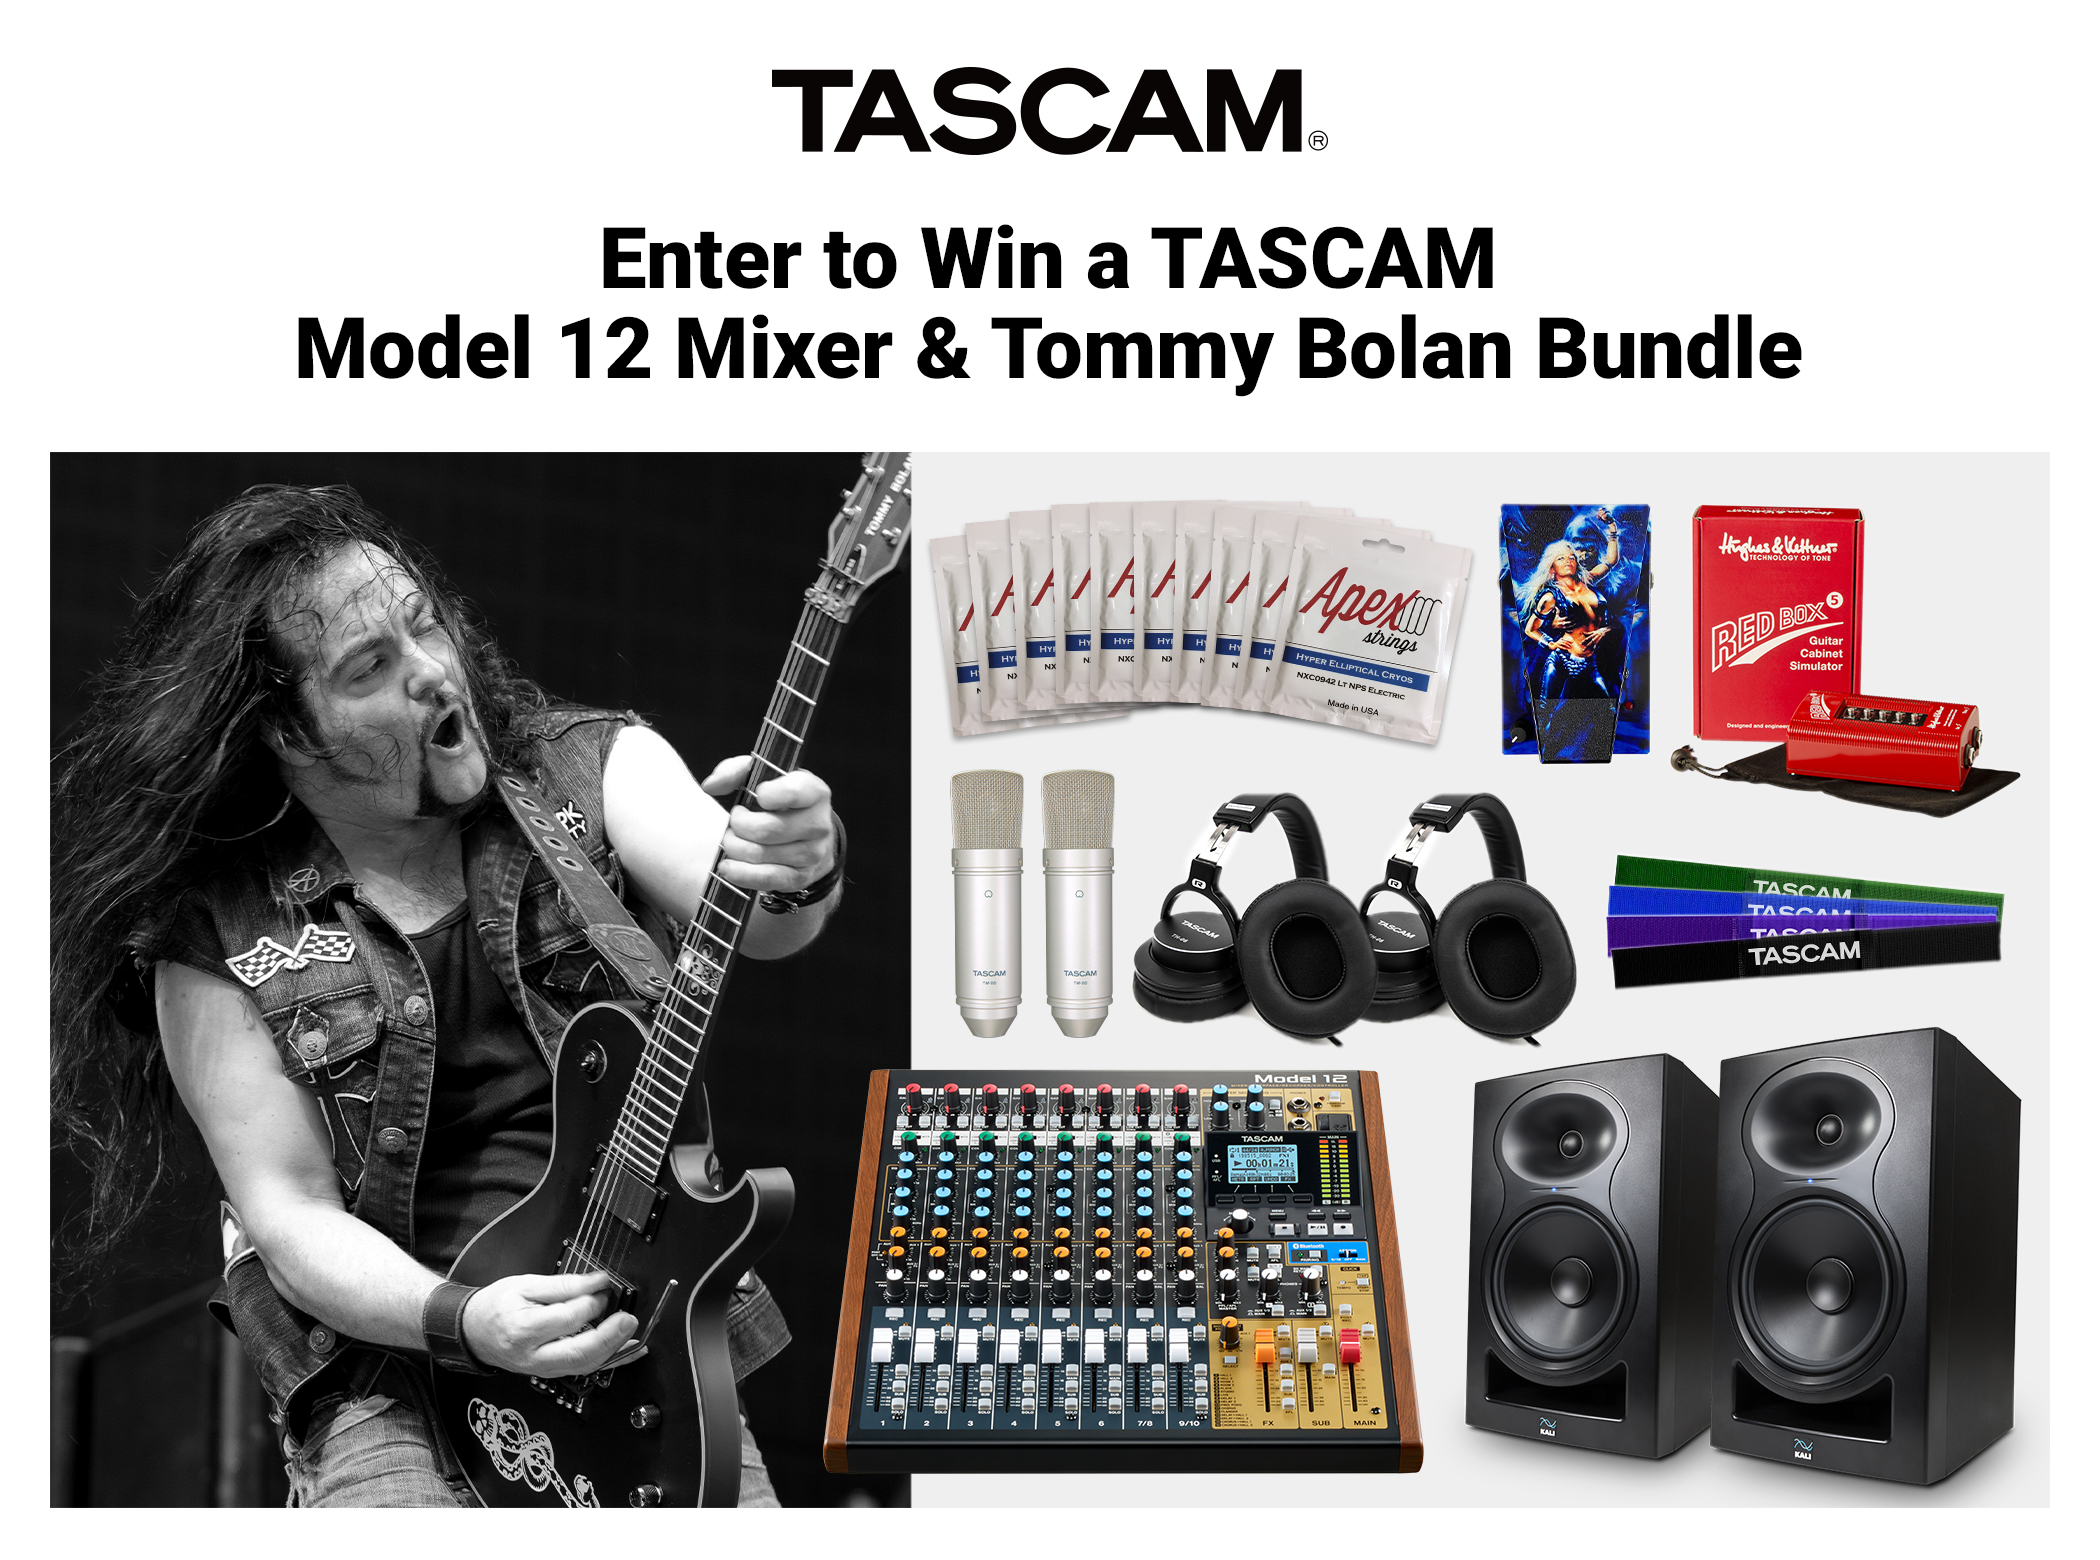 TASCAM anuncia el concurso de grabación y sorteo de equipos de guitarra de TASCAM & Tommy Bolan